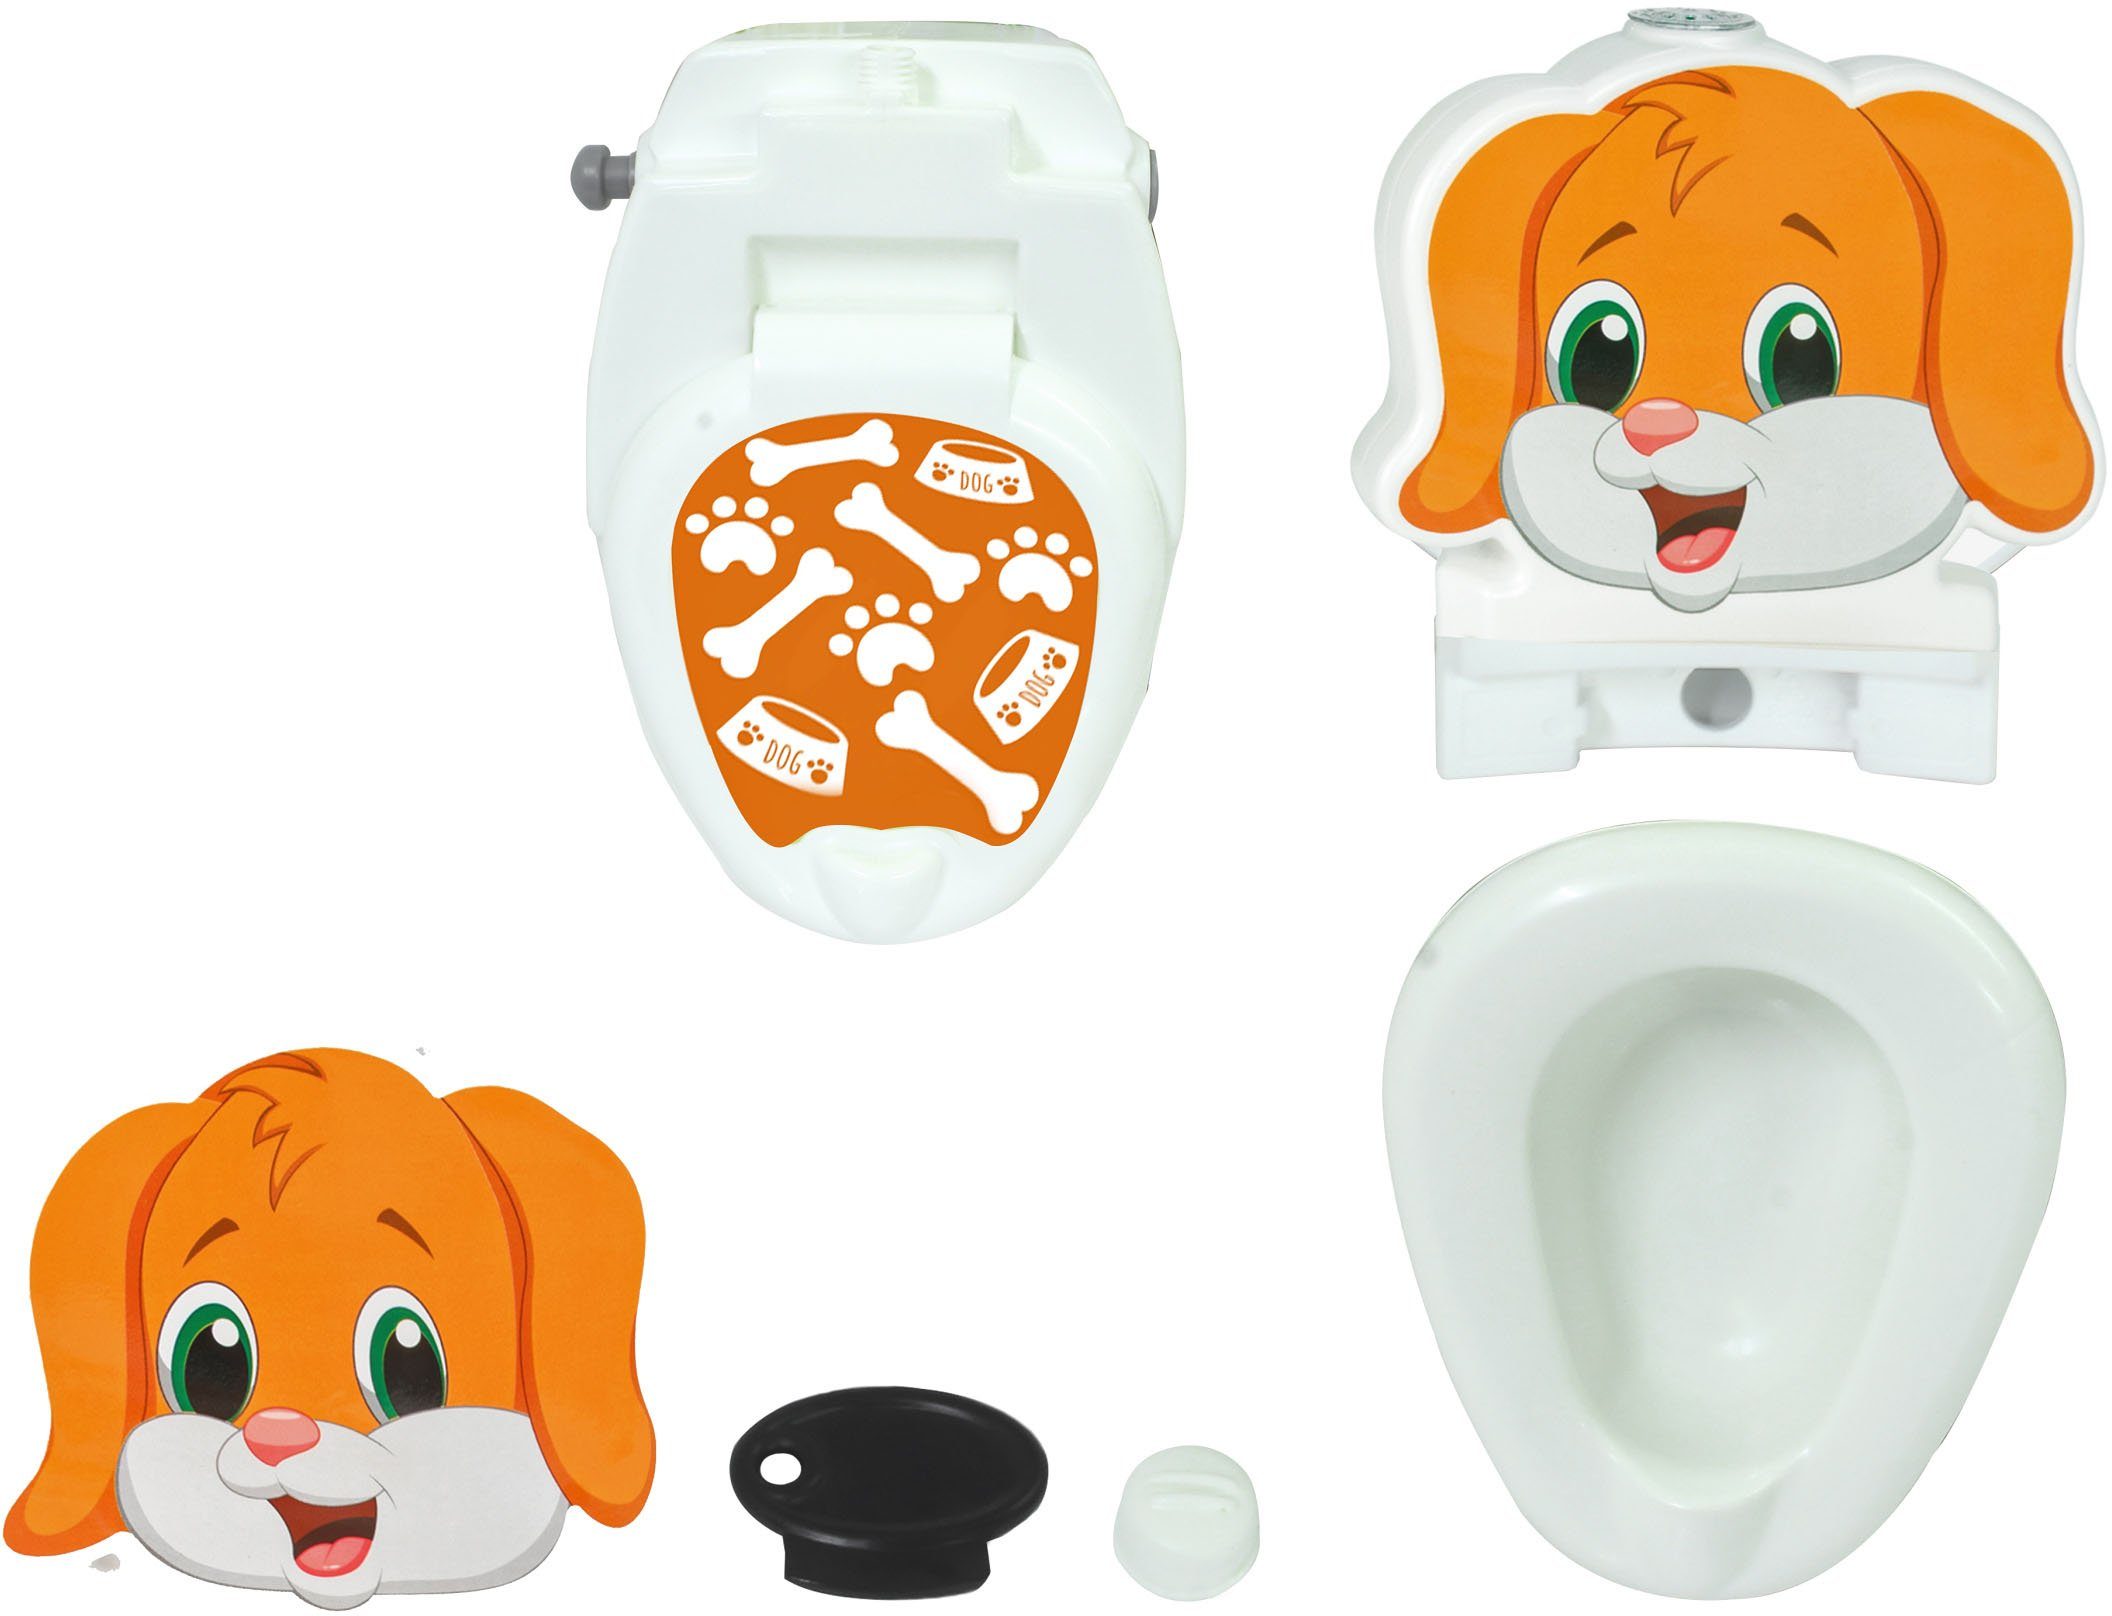 Jamara Toilettentrainer Meine kleine Toilette, mit Hund, Toilettenpapierhalter Spülsound und